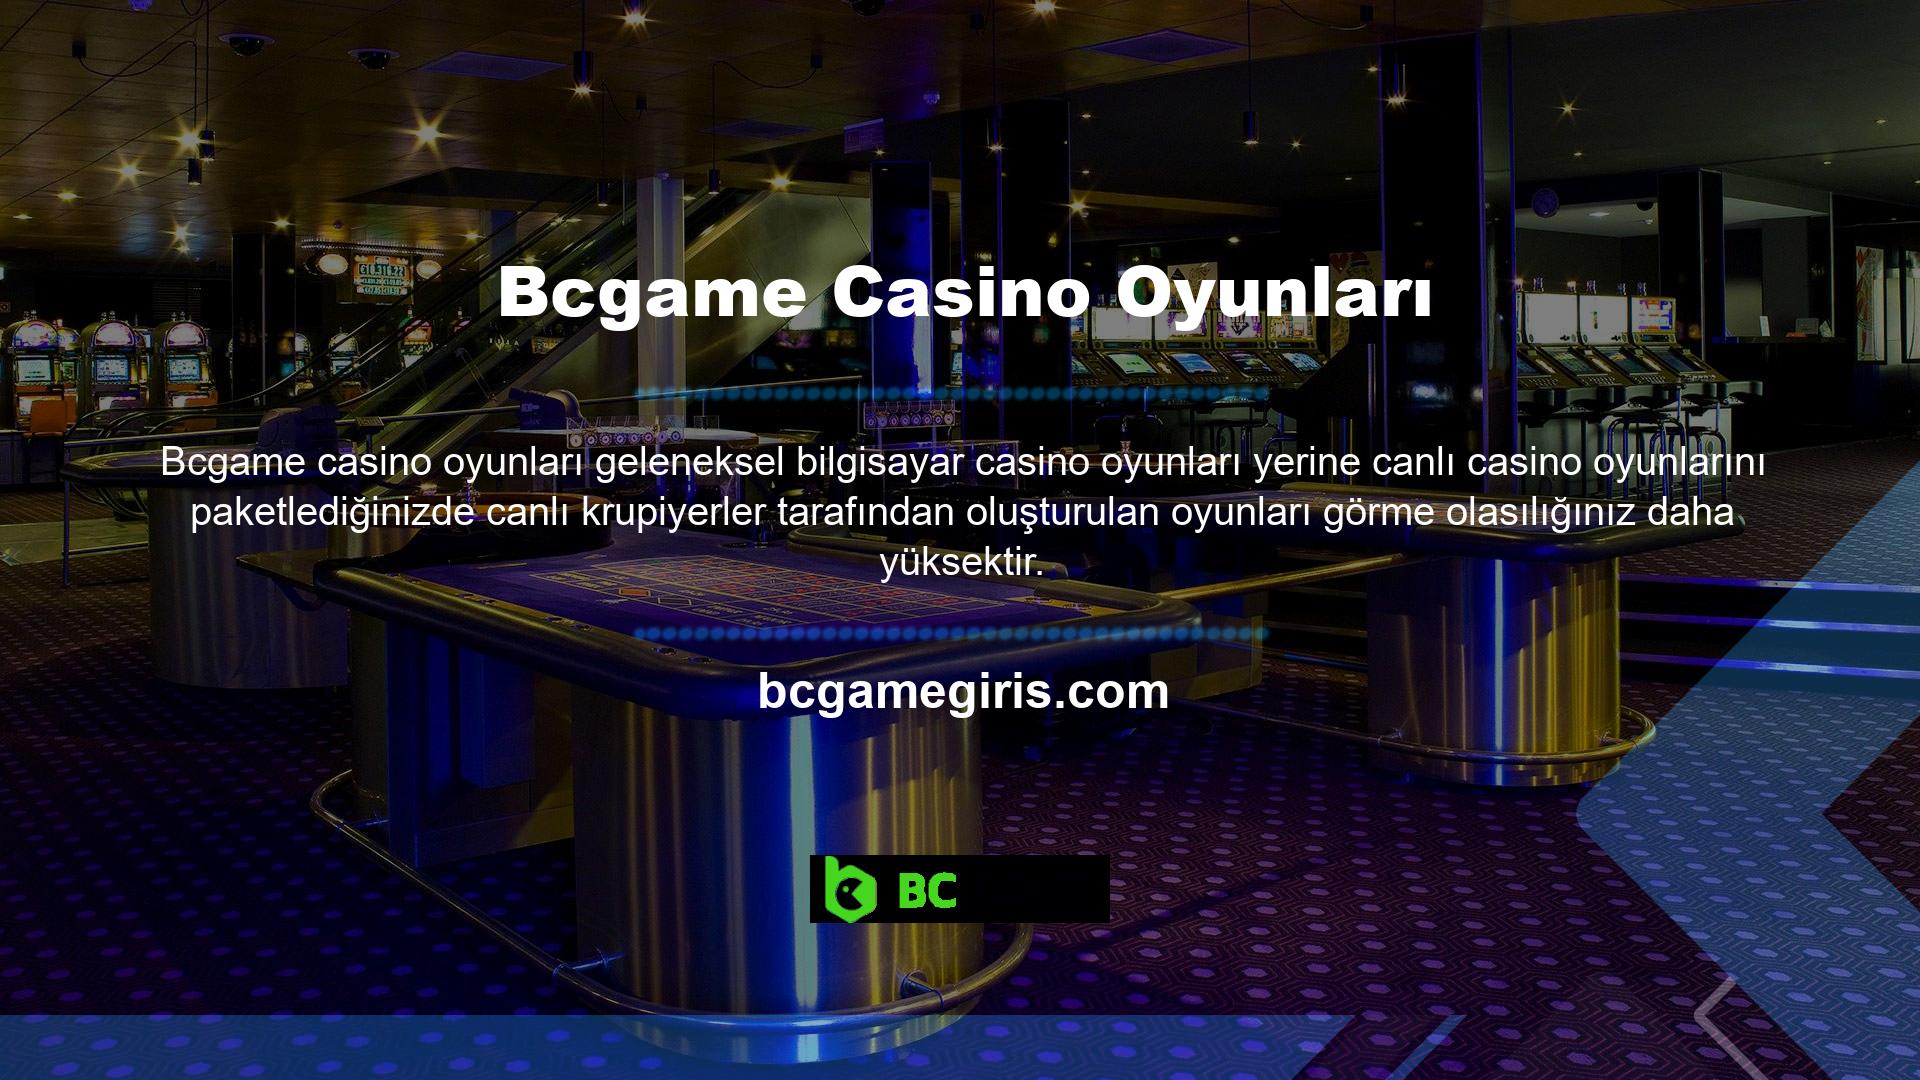 Hiç şüphe yok ki canlı casinolar oyunculara destek ve telefon görüşmeleri yoluyla eğlenme fırsatı sunuyor